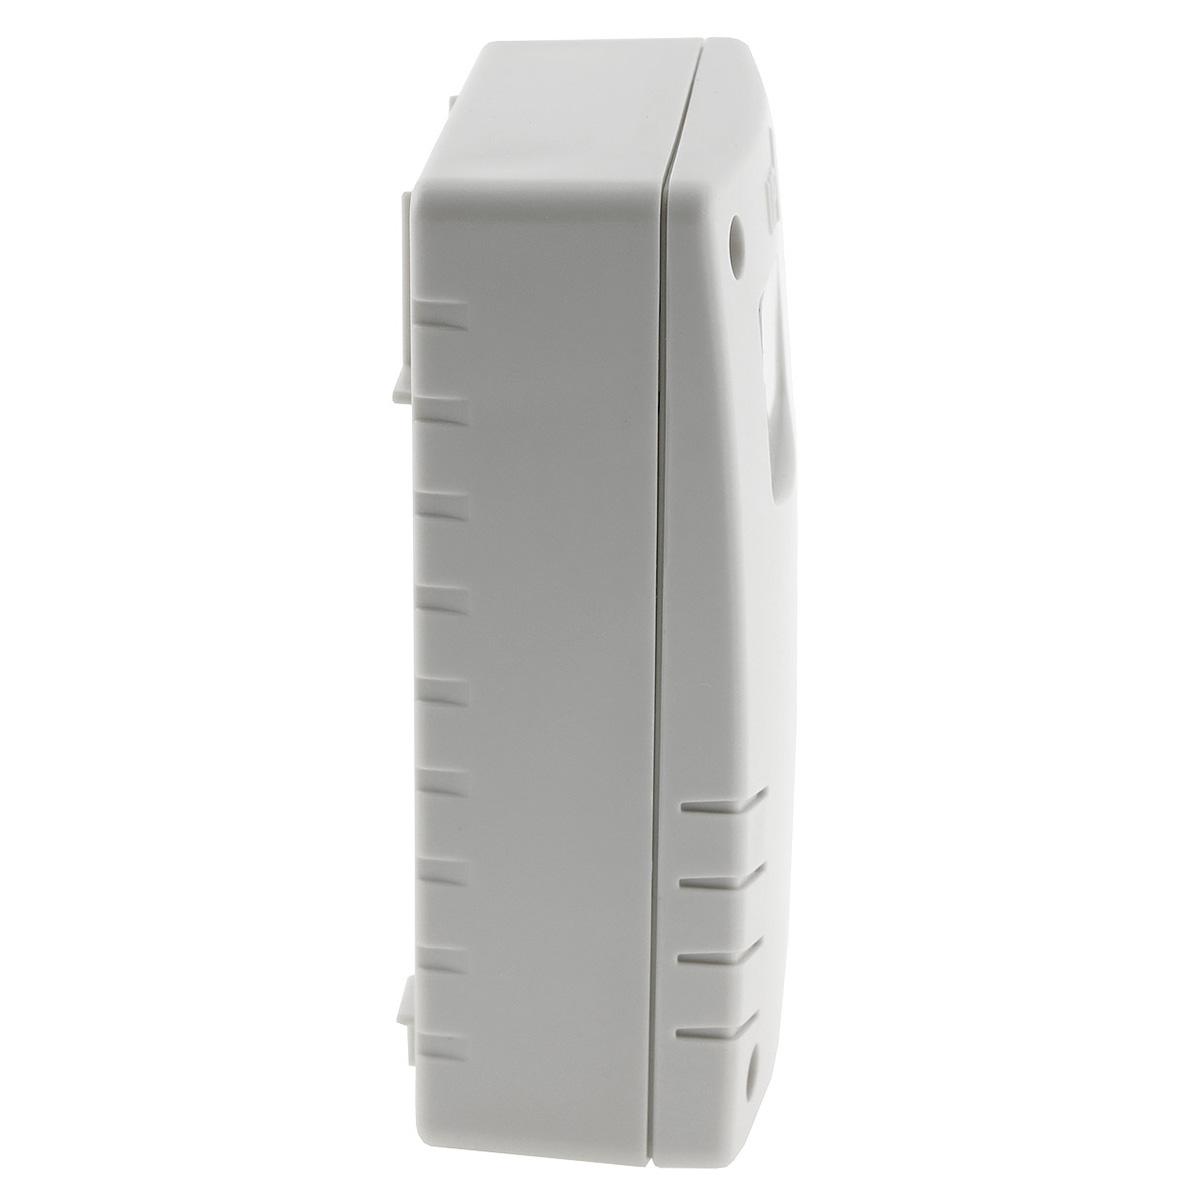 Dämmerungsschalter weiß IP54 230V, 10A, 3-500 Lux